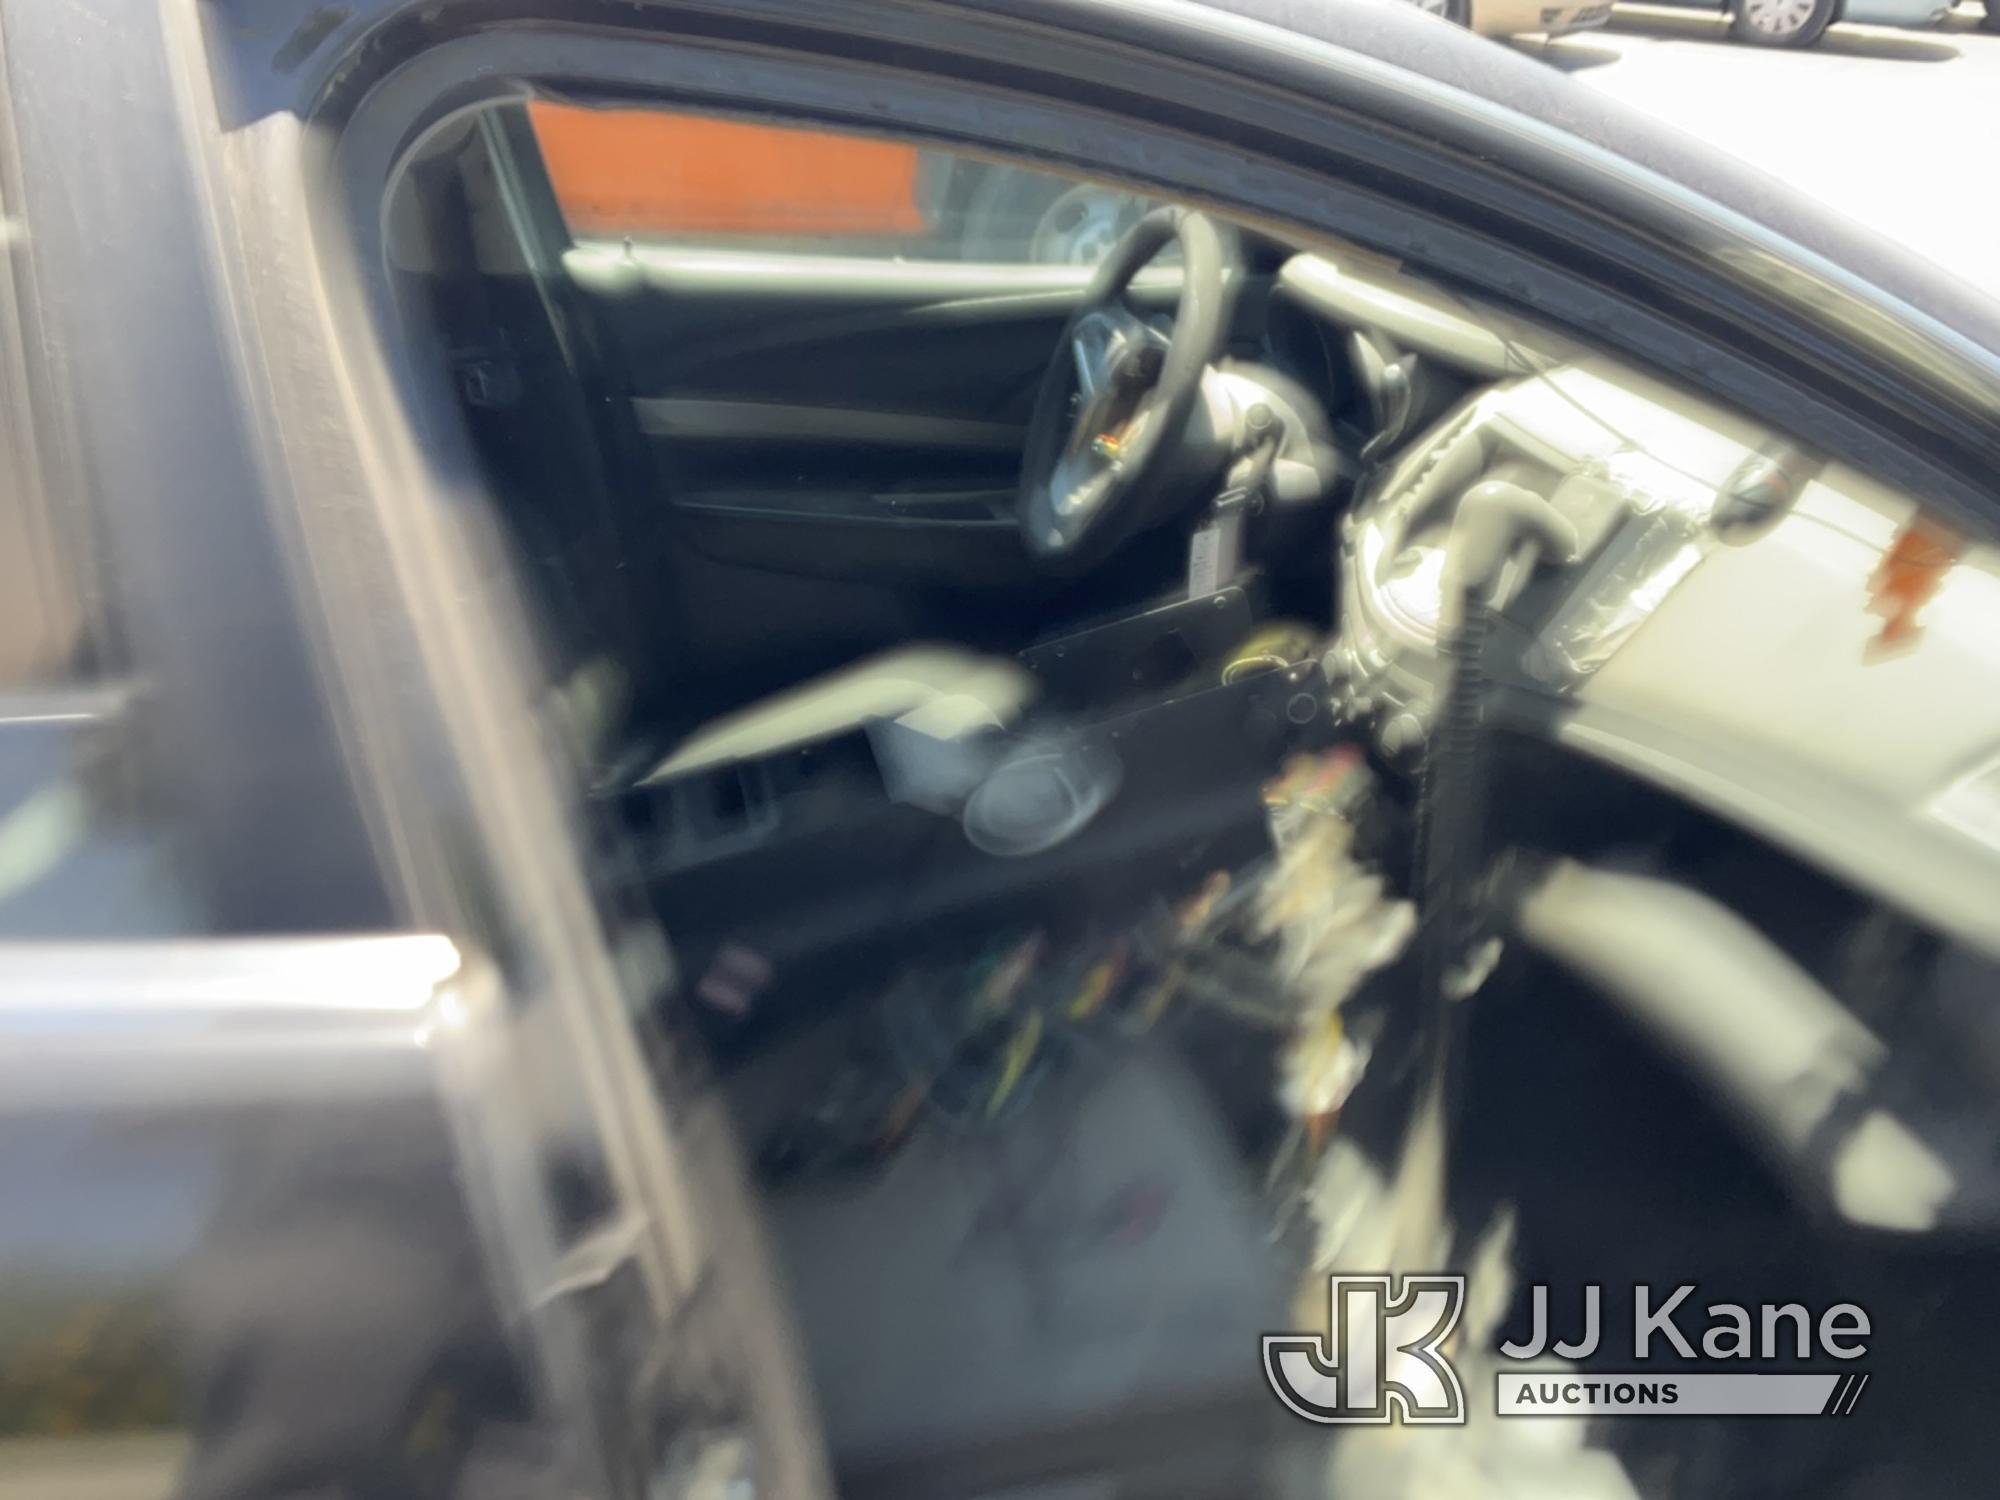 (Jurupa Valley, CA) 2014 Chevrolet Caprice 4-Door Sedan Runs & Moves, Air Bag Light Is On, Stripped